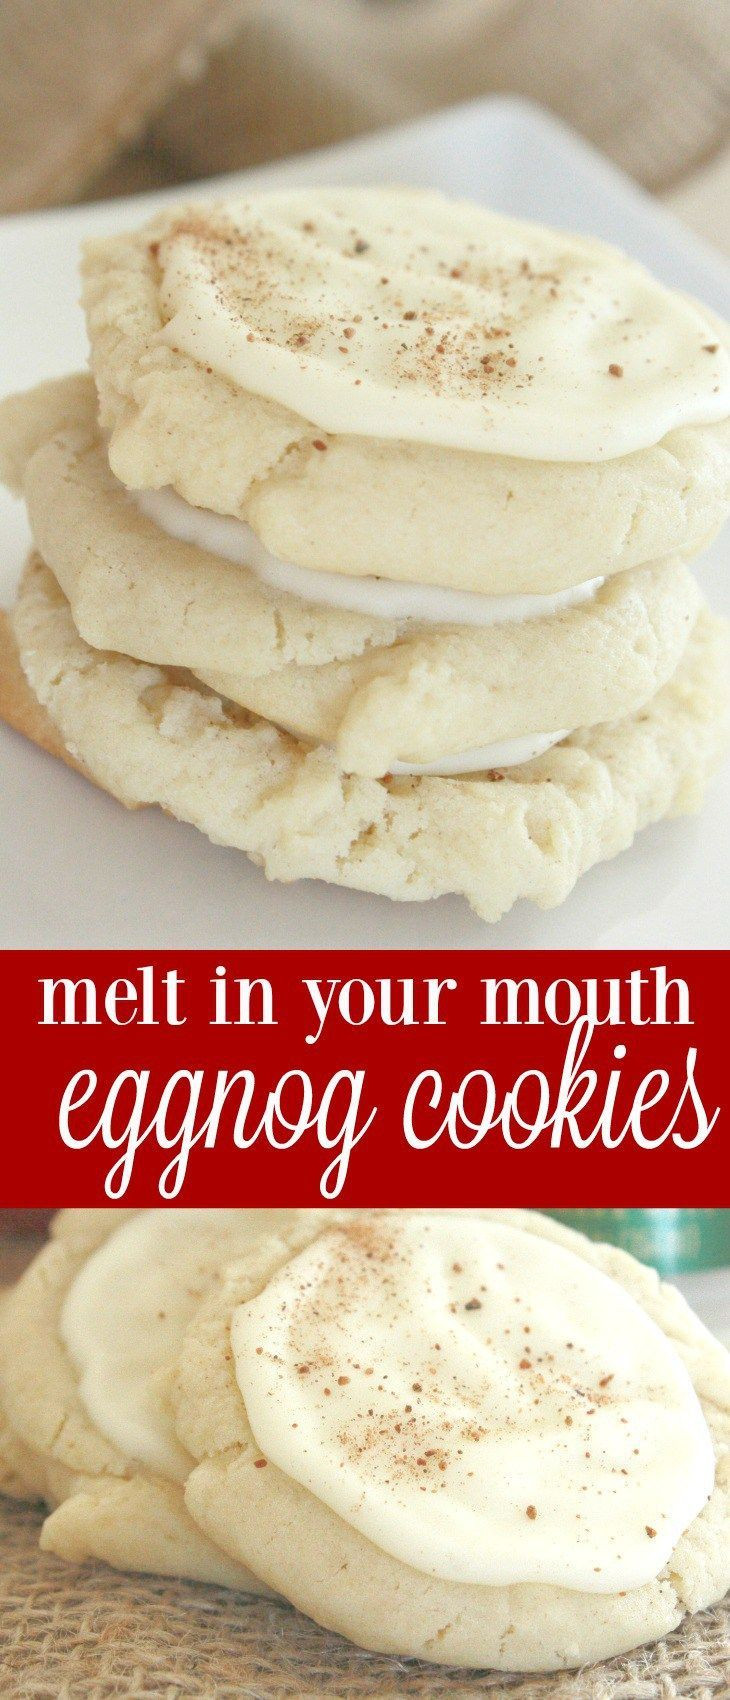 Easy Christmas Cookies Pinterest
 Best 25 Eggnog cookies ideas on Pinterest